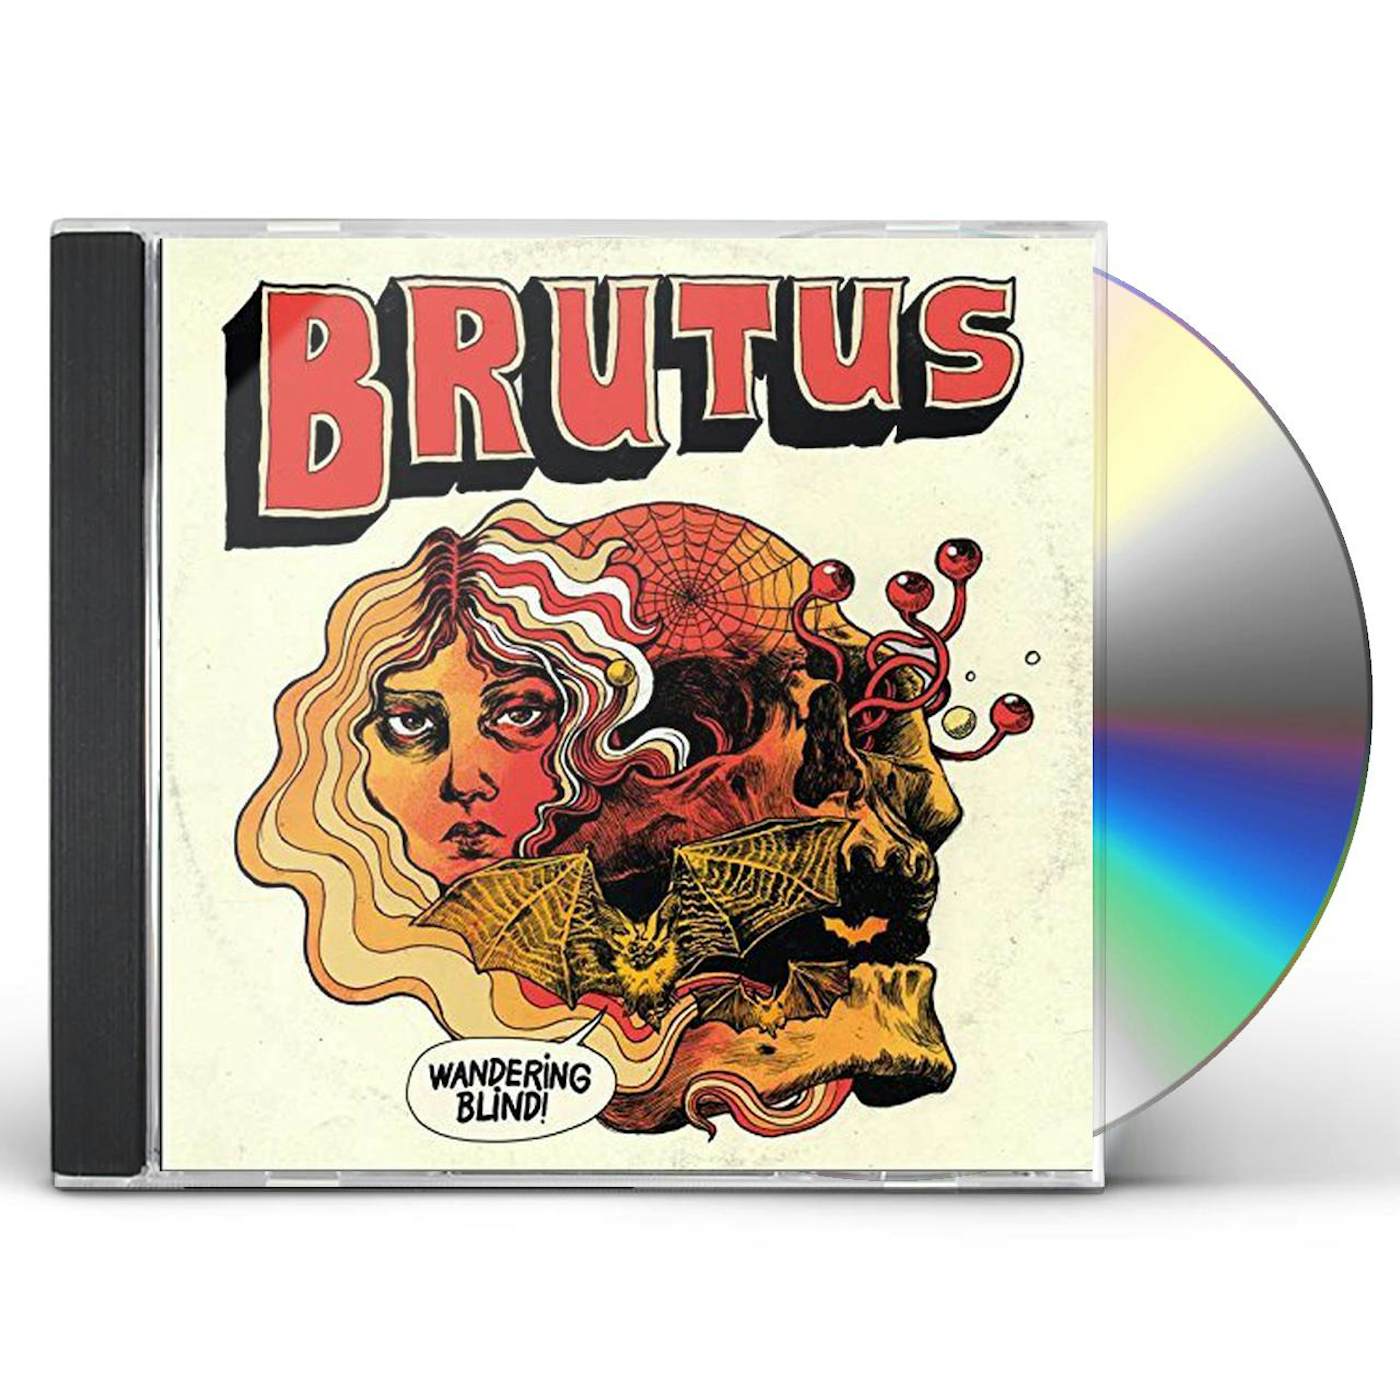 Brutus WANDERING BLIND CD